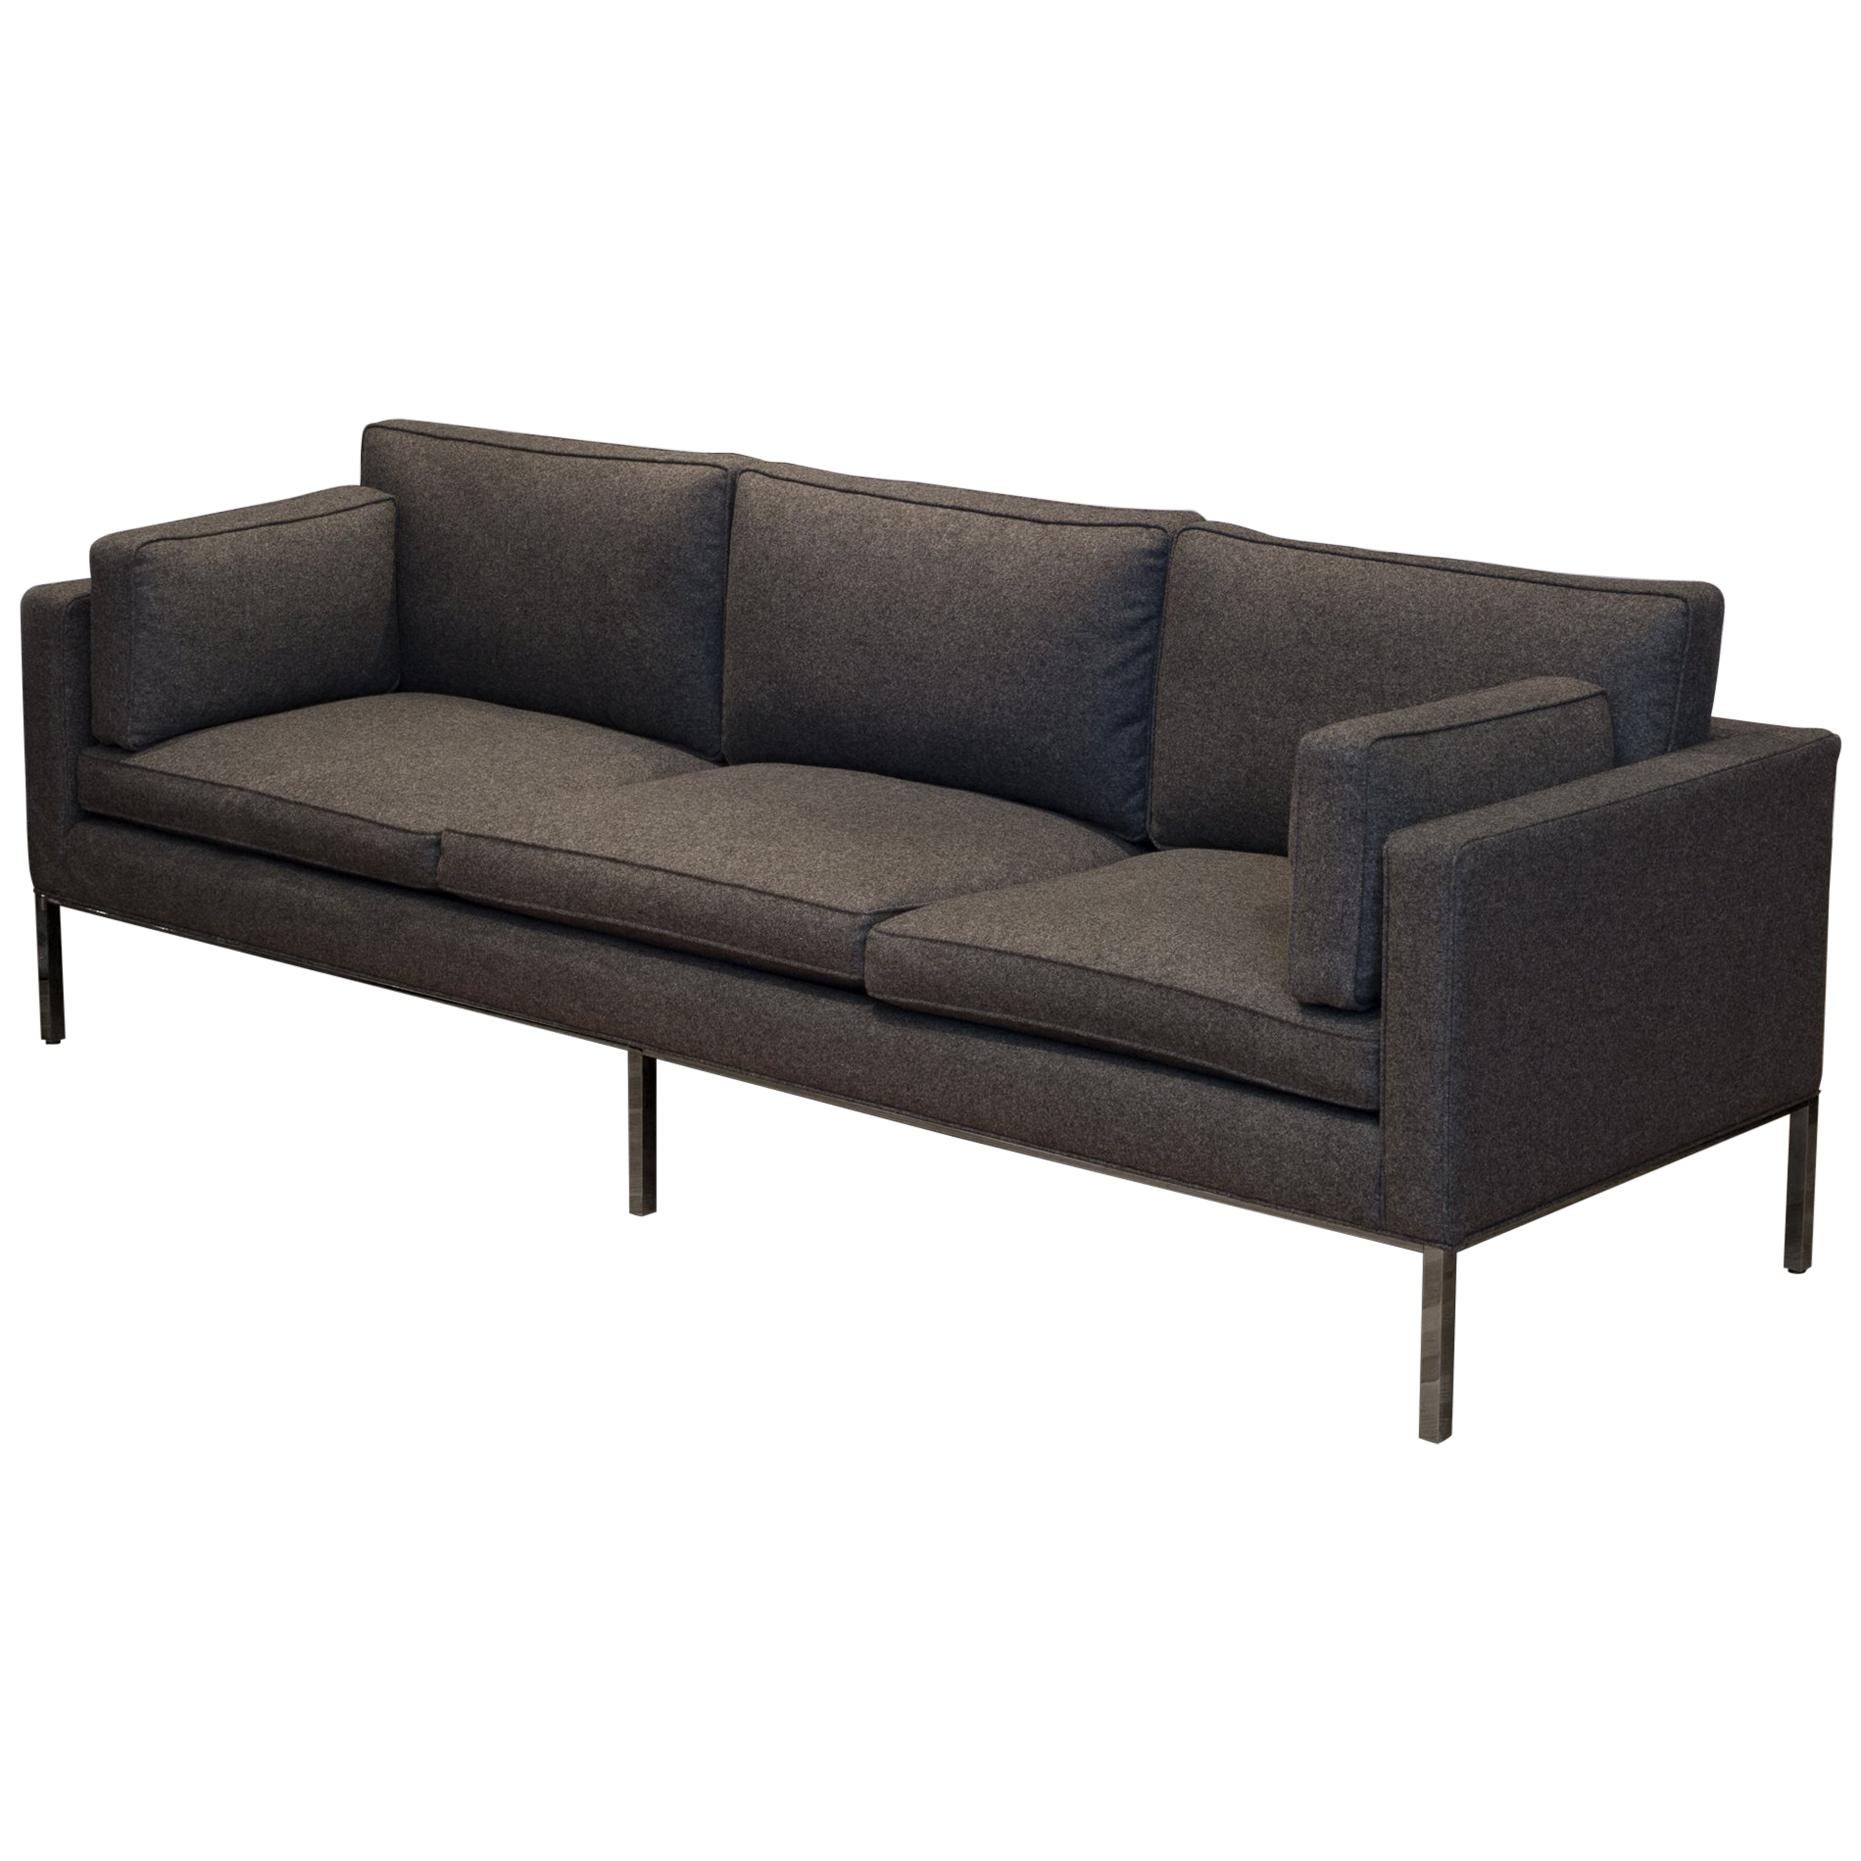 Artifort 905-3 Seat Comfort Sofa in Divina Melange Wool Frabric-Like New